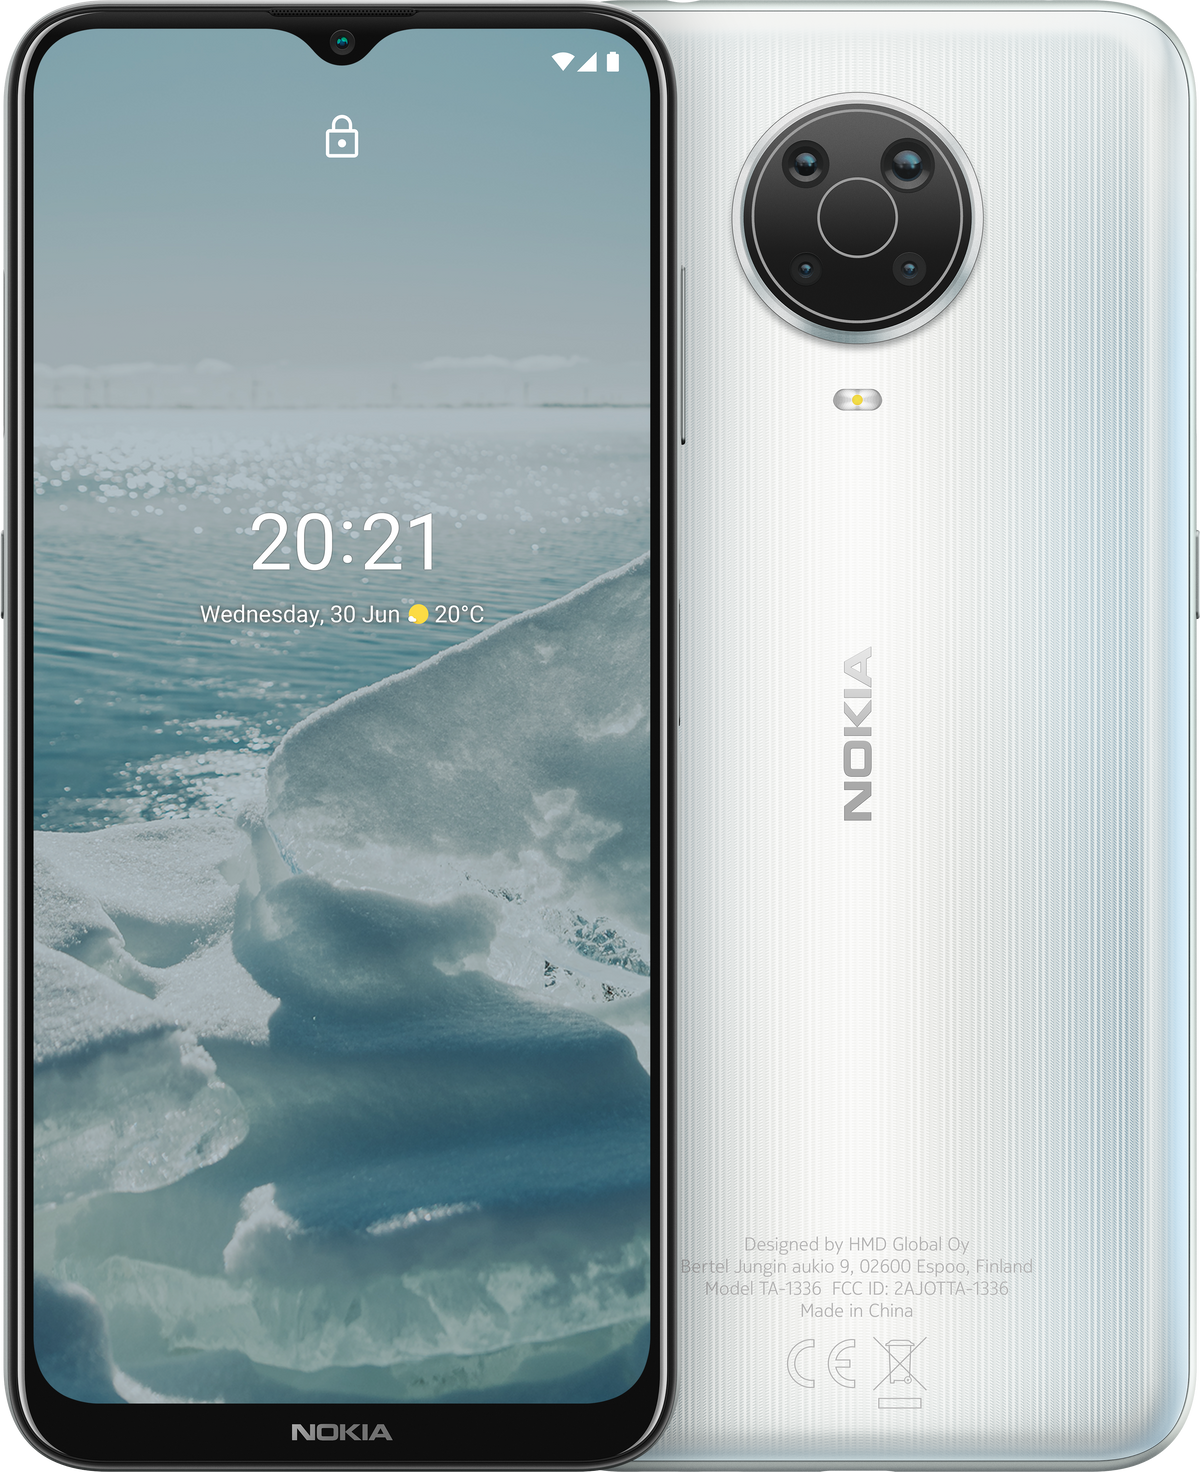 Nokia G20 - Good Condition